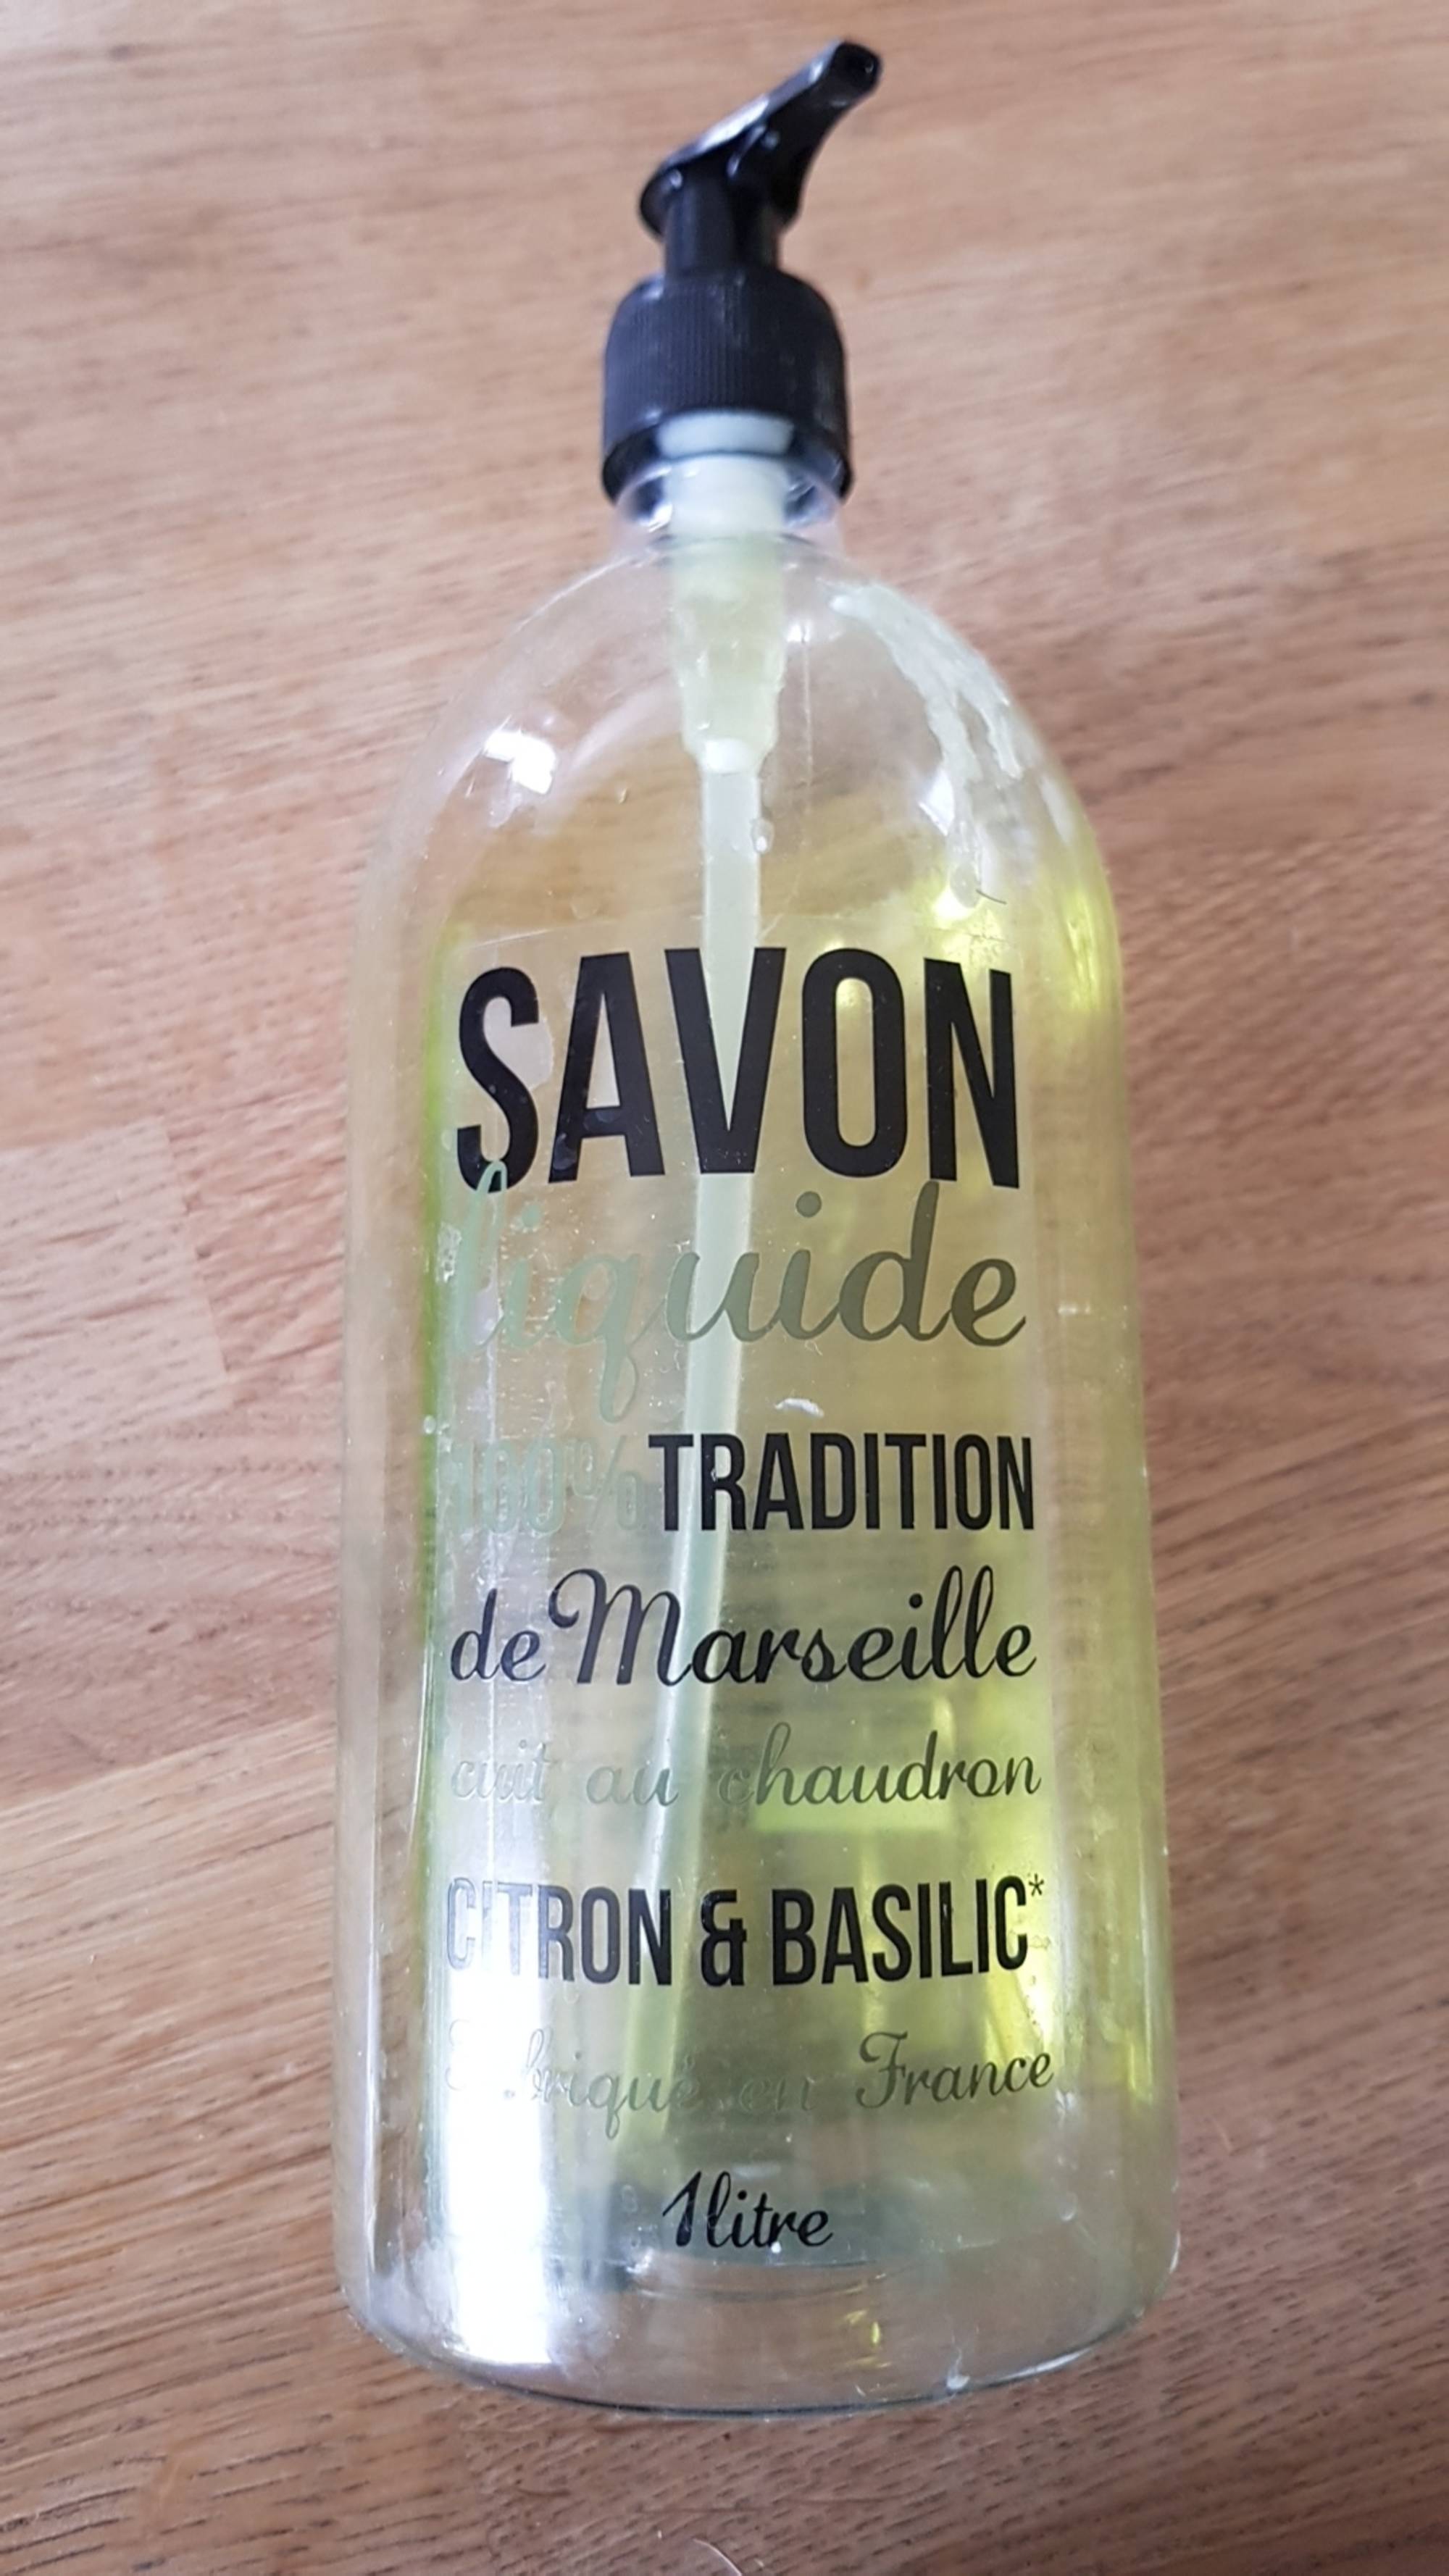 SAVON DE MARSEILLE - Savon liquide 100% tradition de Marseille - Cuit au chaudron - Citron & basilic